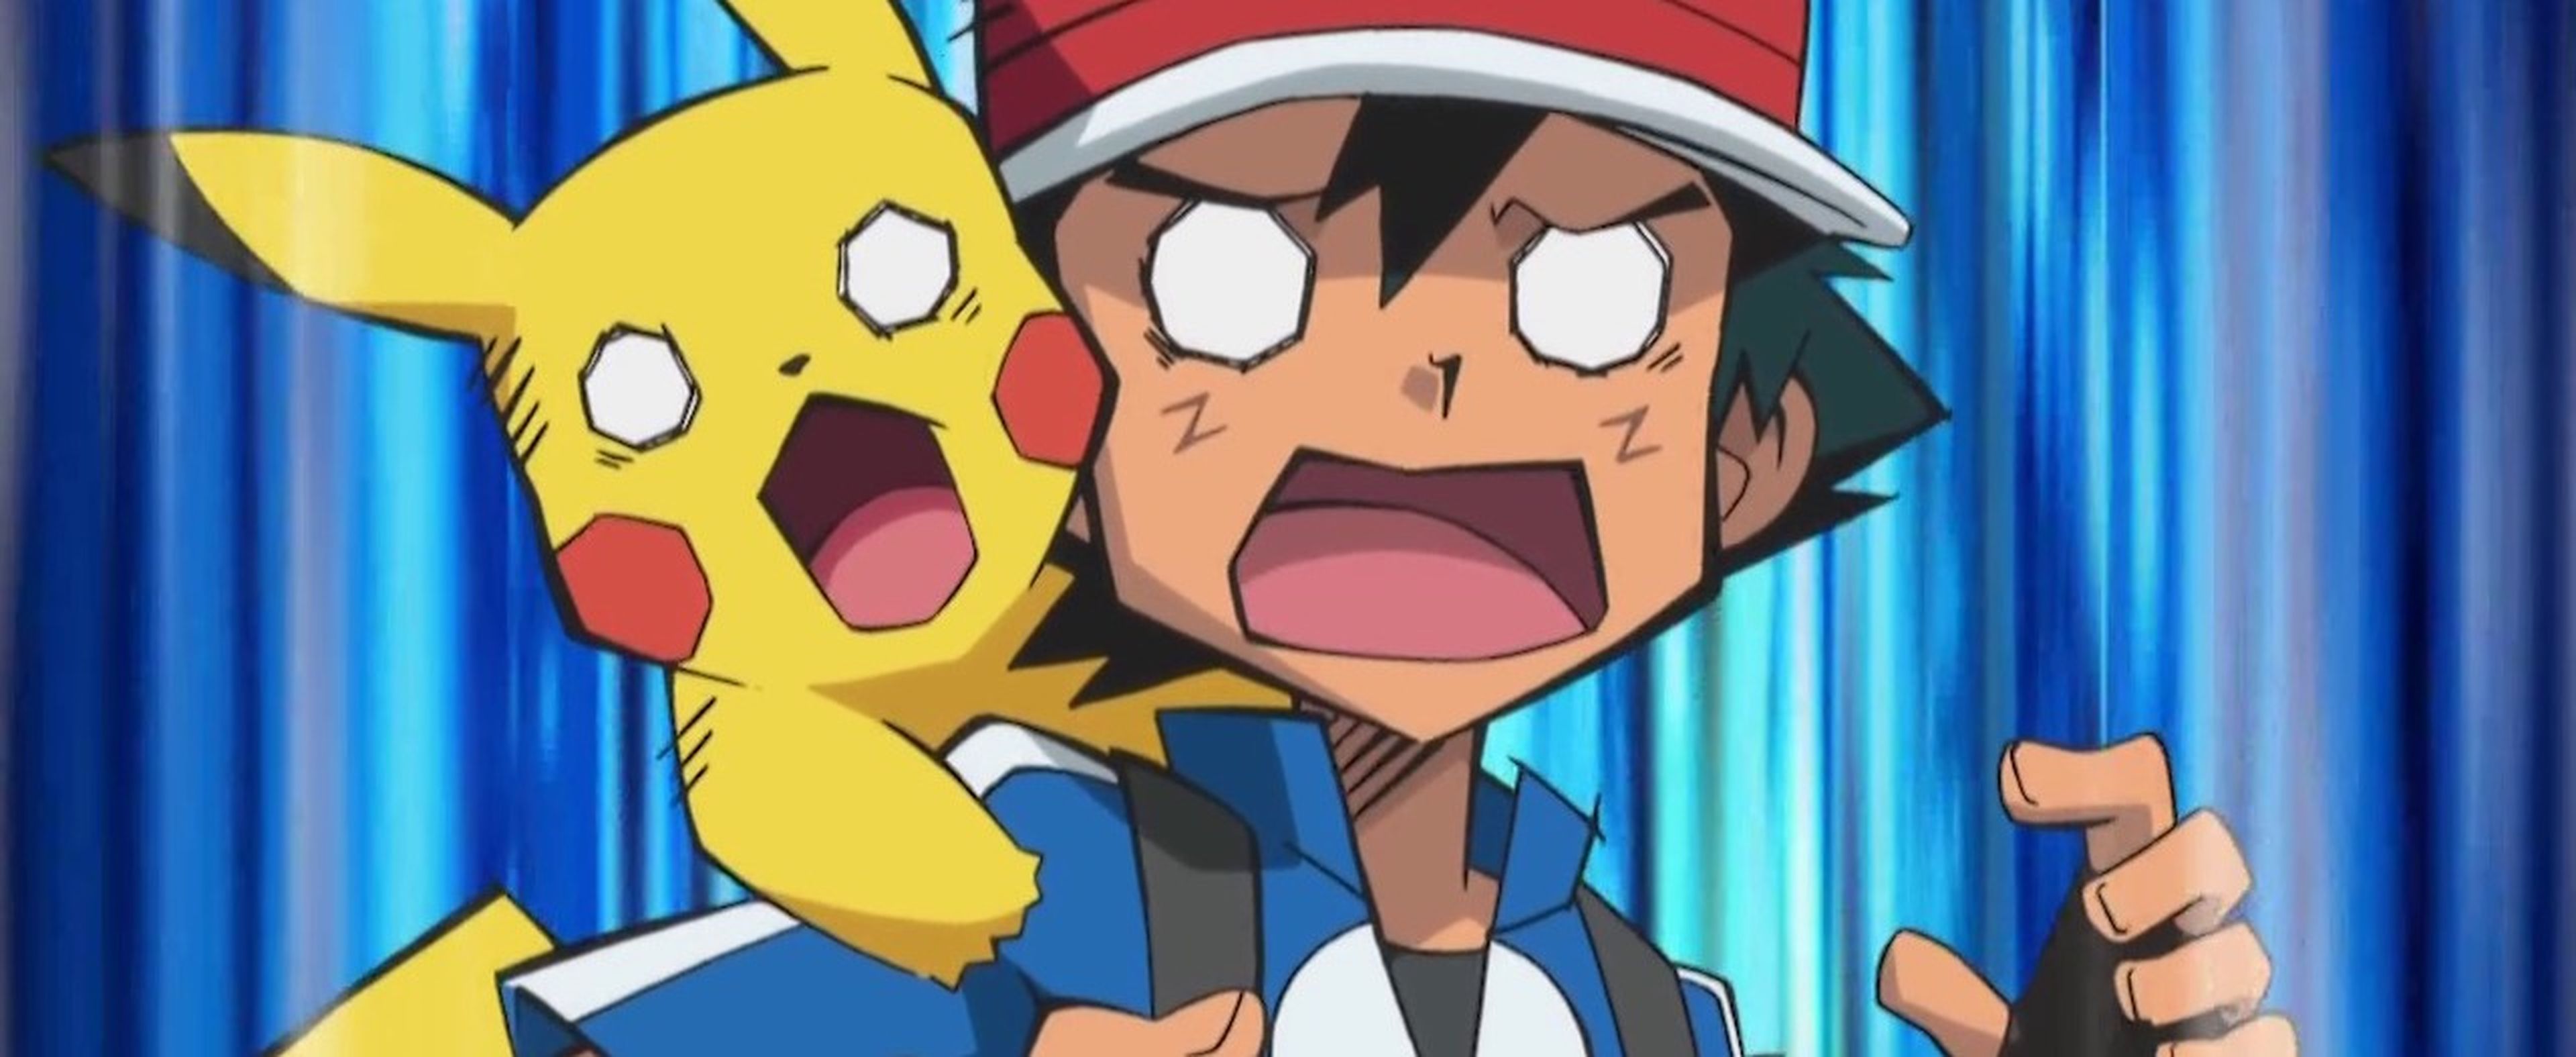 Pokémon - Ash y Pikachu sorprendidos